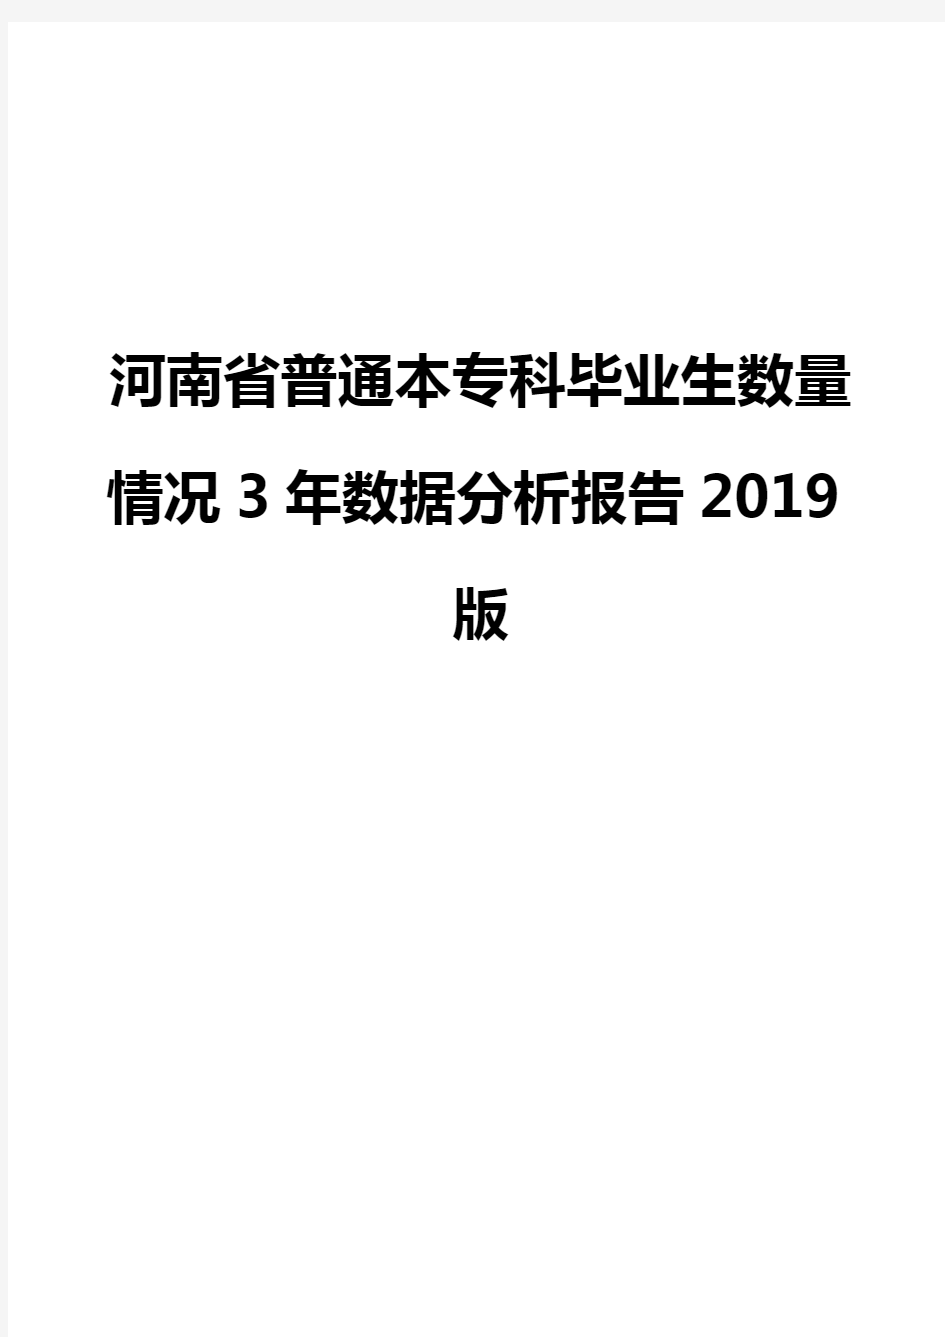 河南省普通本专科毕业生数量情况3年数据分析报告2019版